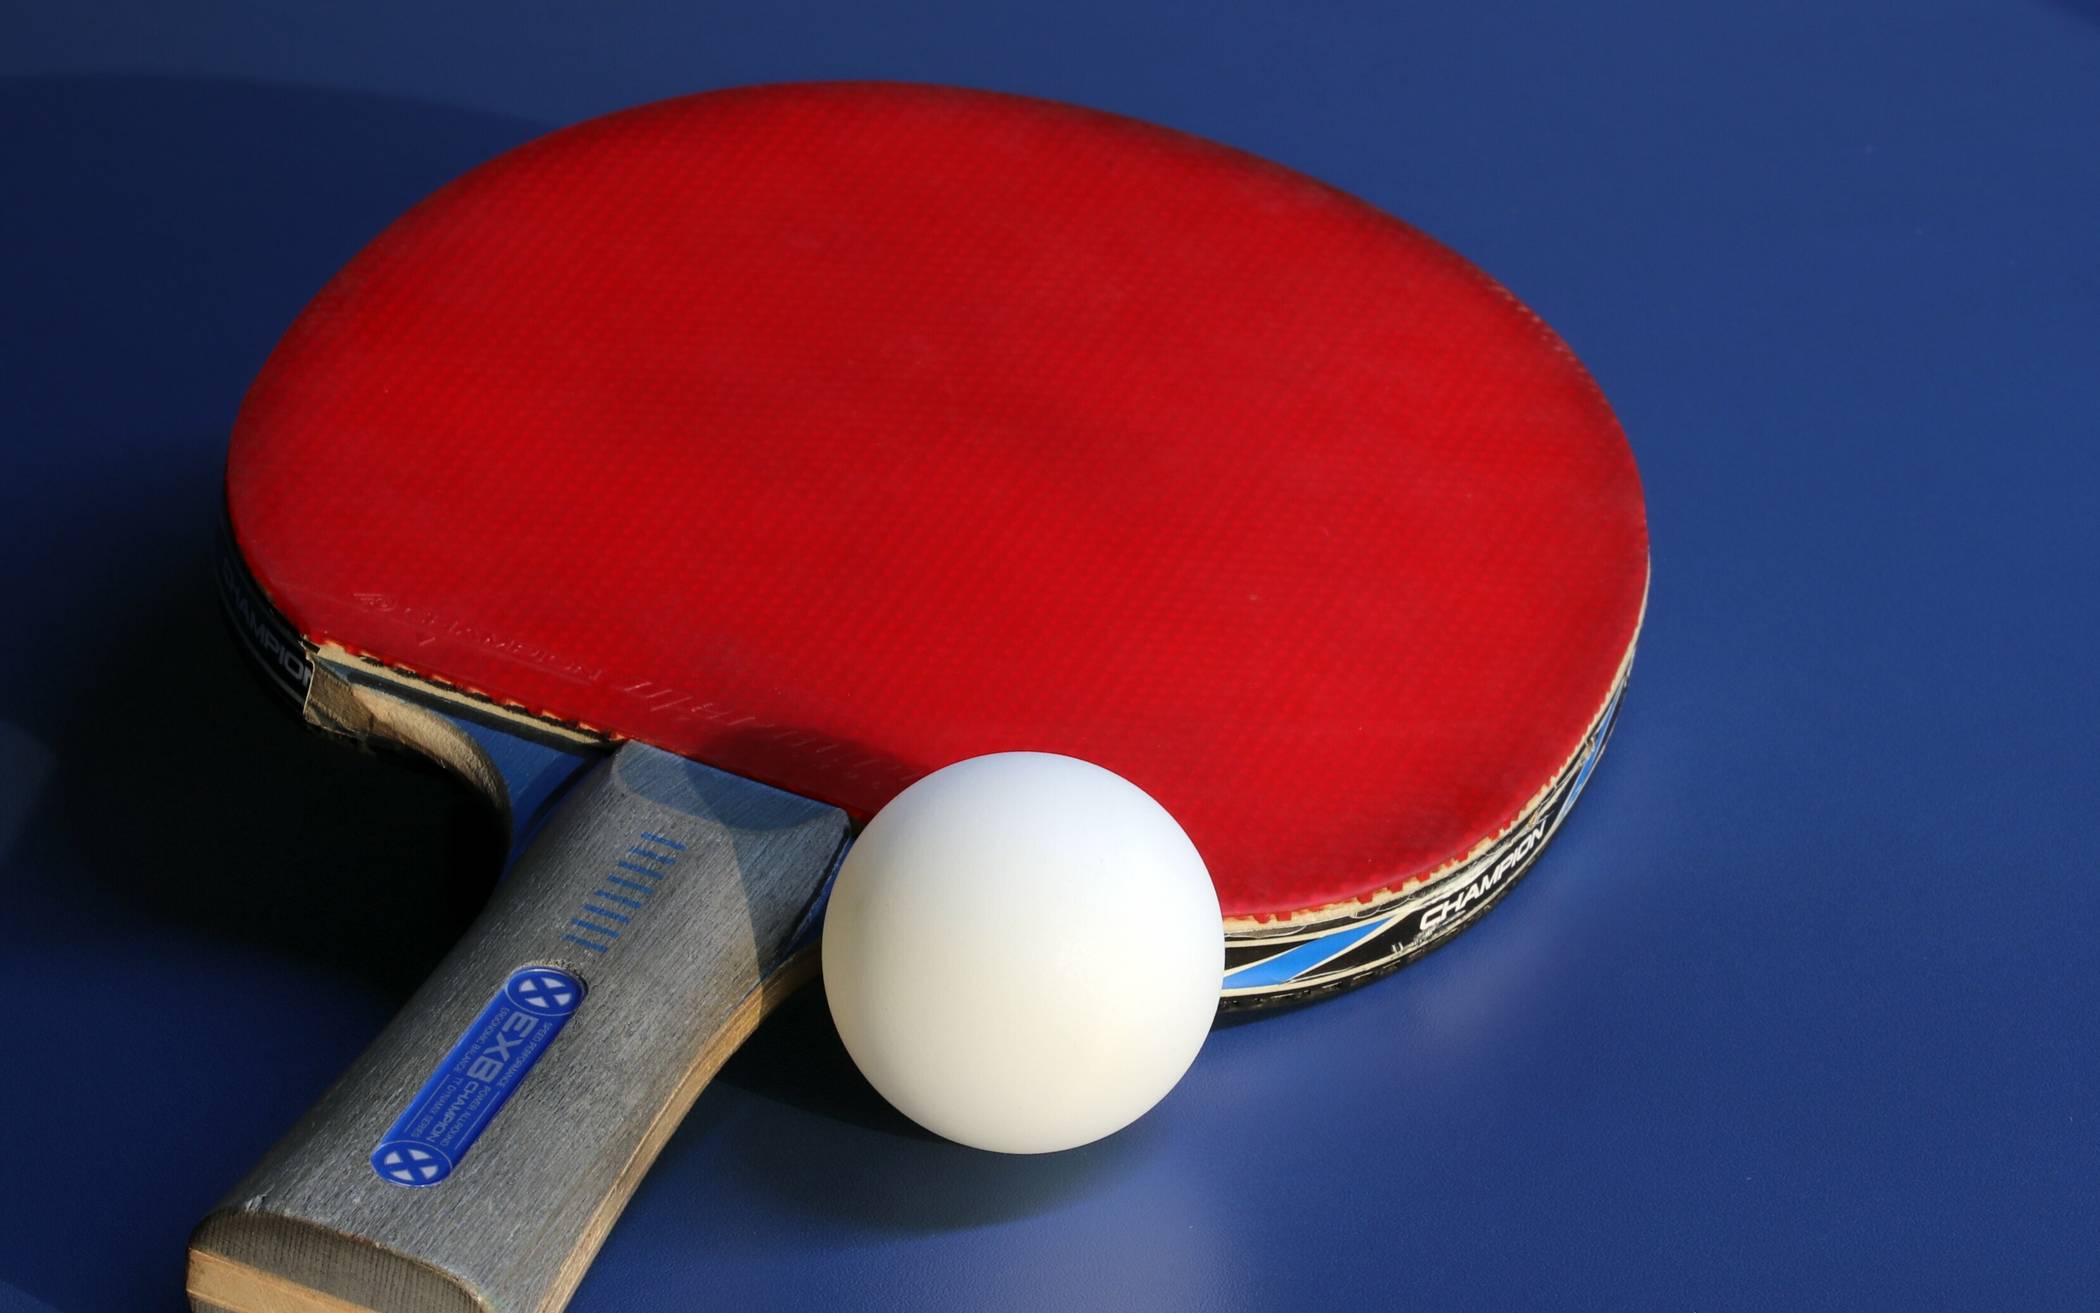  Tischtennis ist für Diabetes-Kranke hervorragend als Bewegungssport geeignet.  